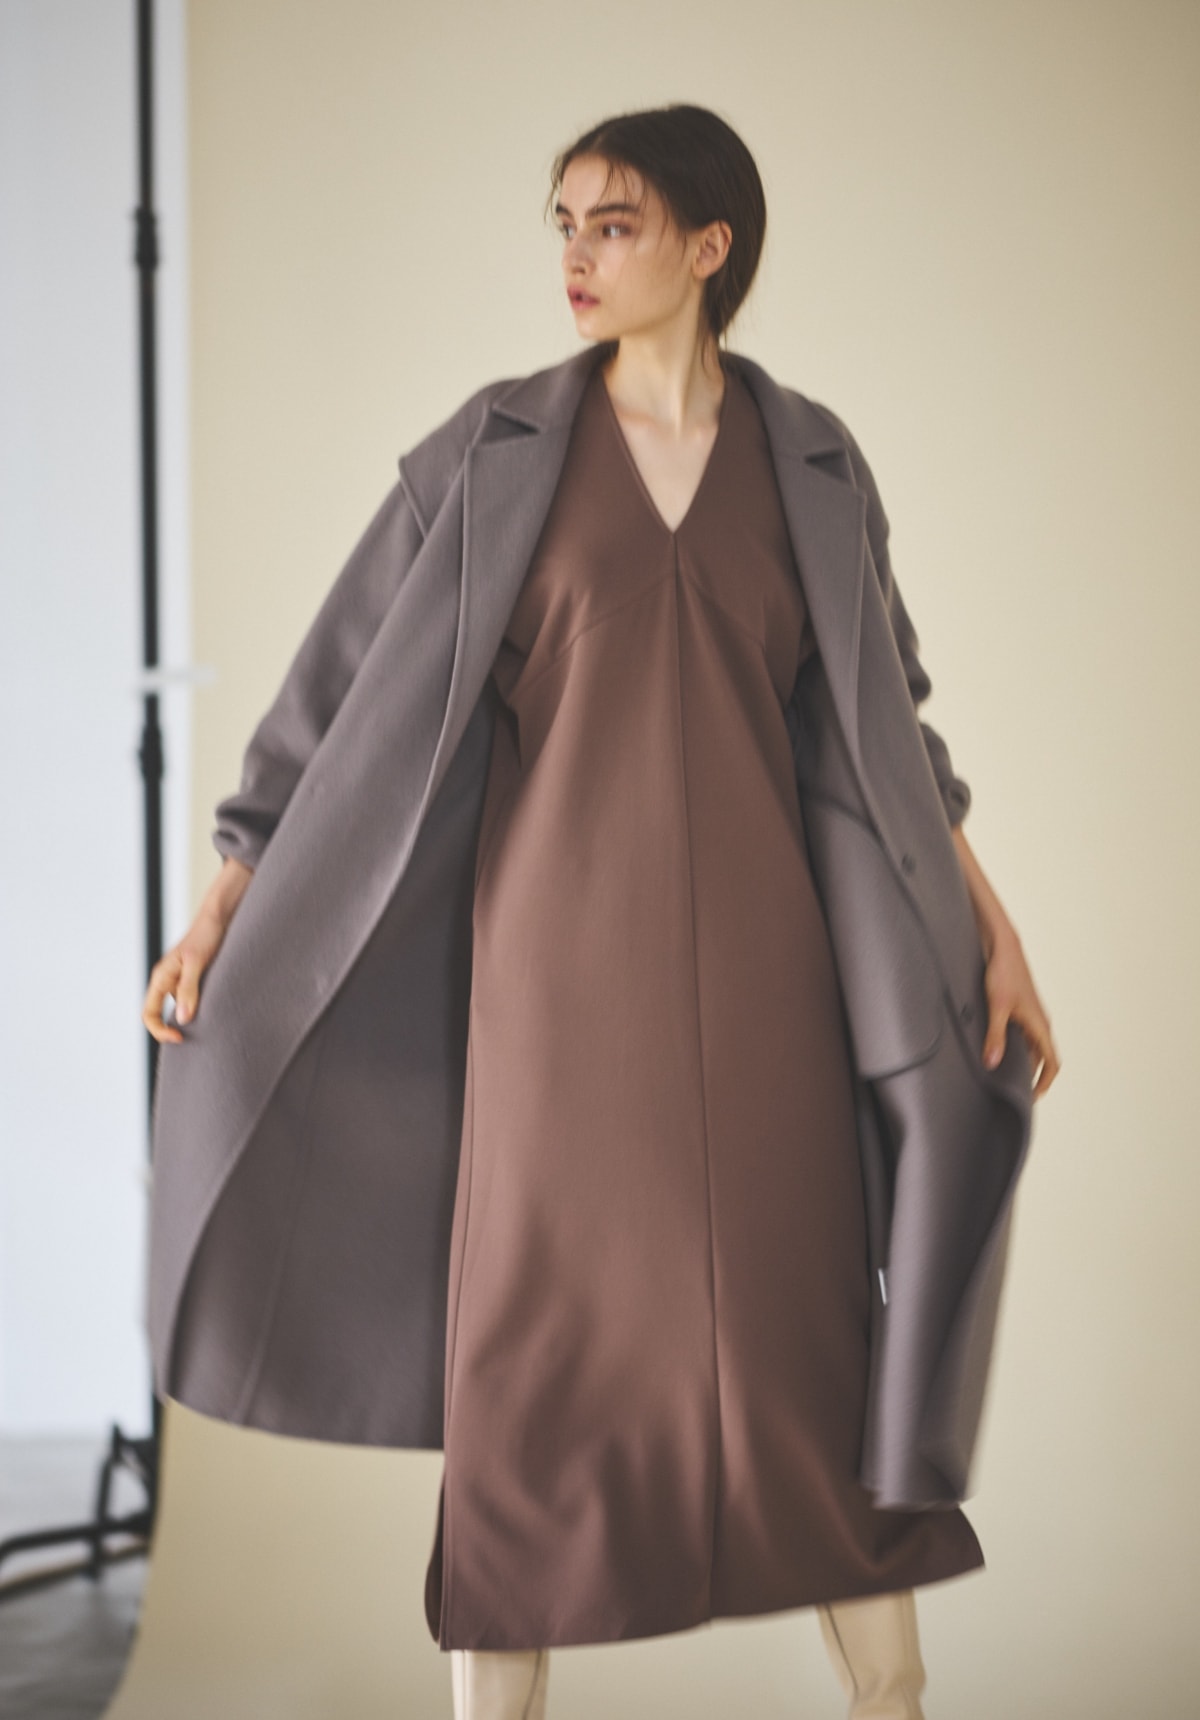 ドルマンスリーブカットジャカードワンピースを着用した女性がコートを羽織っている写真